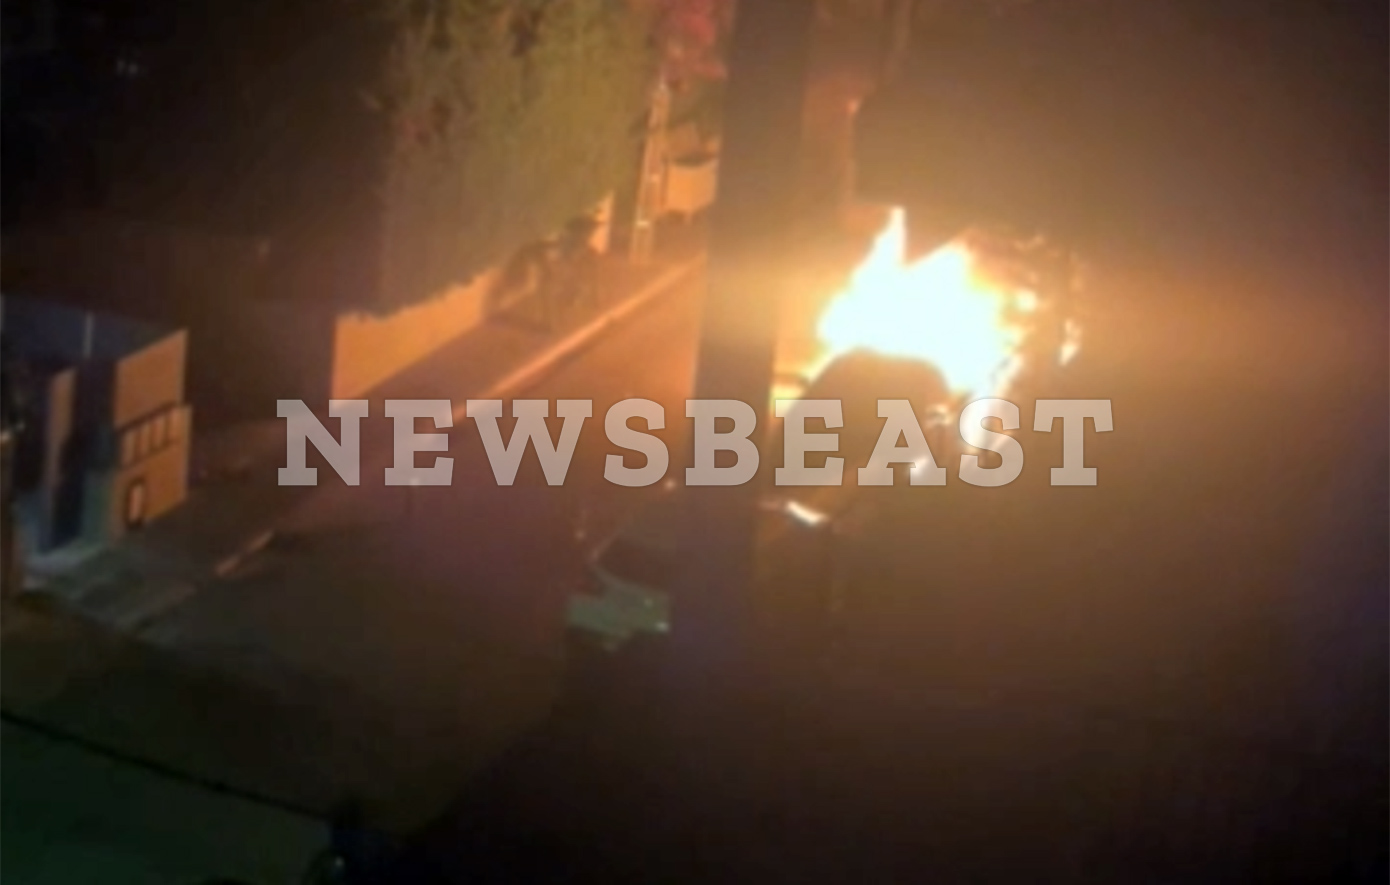 Βίντεο με το περιπολικό στις φλόγες μετά την επίθεση με μολότοφ έξω από το σπίτι της προέδρου του Αρείου Πάγου &#8211; Τι εξετάζει η ΕΛ.ΑΣ.